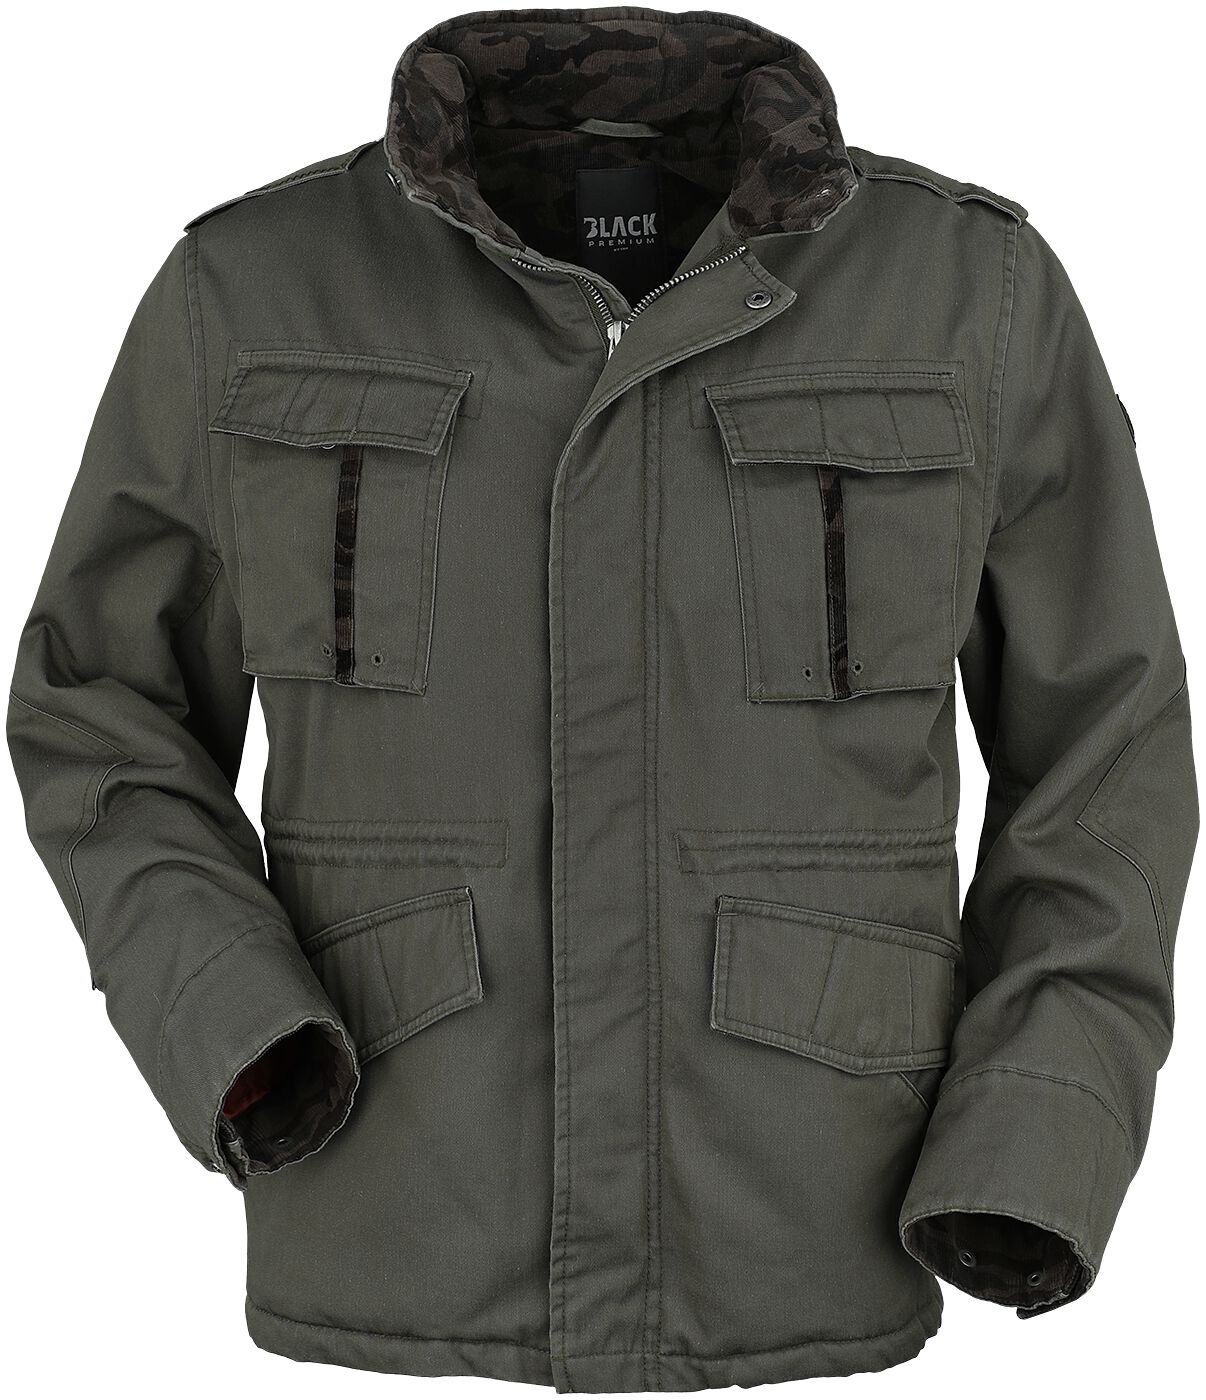 Black Premium by EMP - Camouflage/Flecktarn Winterjacke - Jacket with hidden hood - S bis XXL - für Männer - Größe S - oliv/olivcamo von Black Premium by EMP